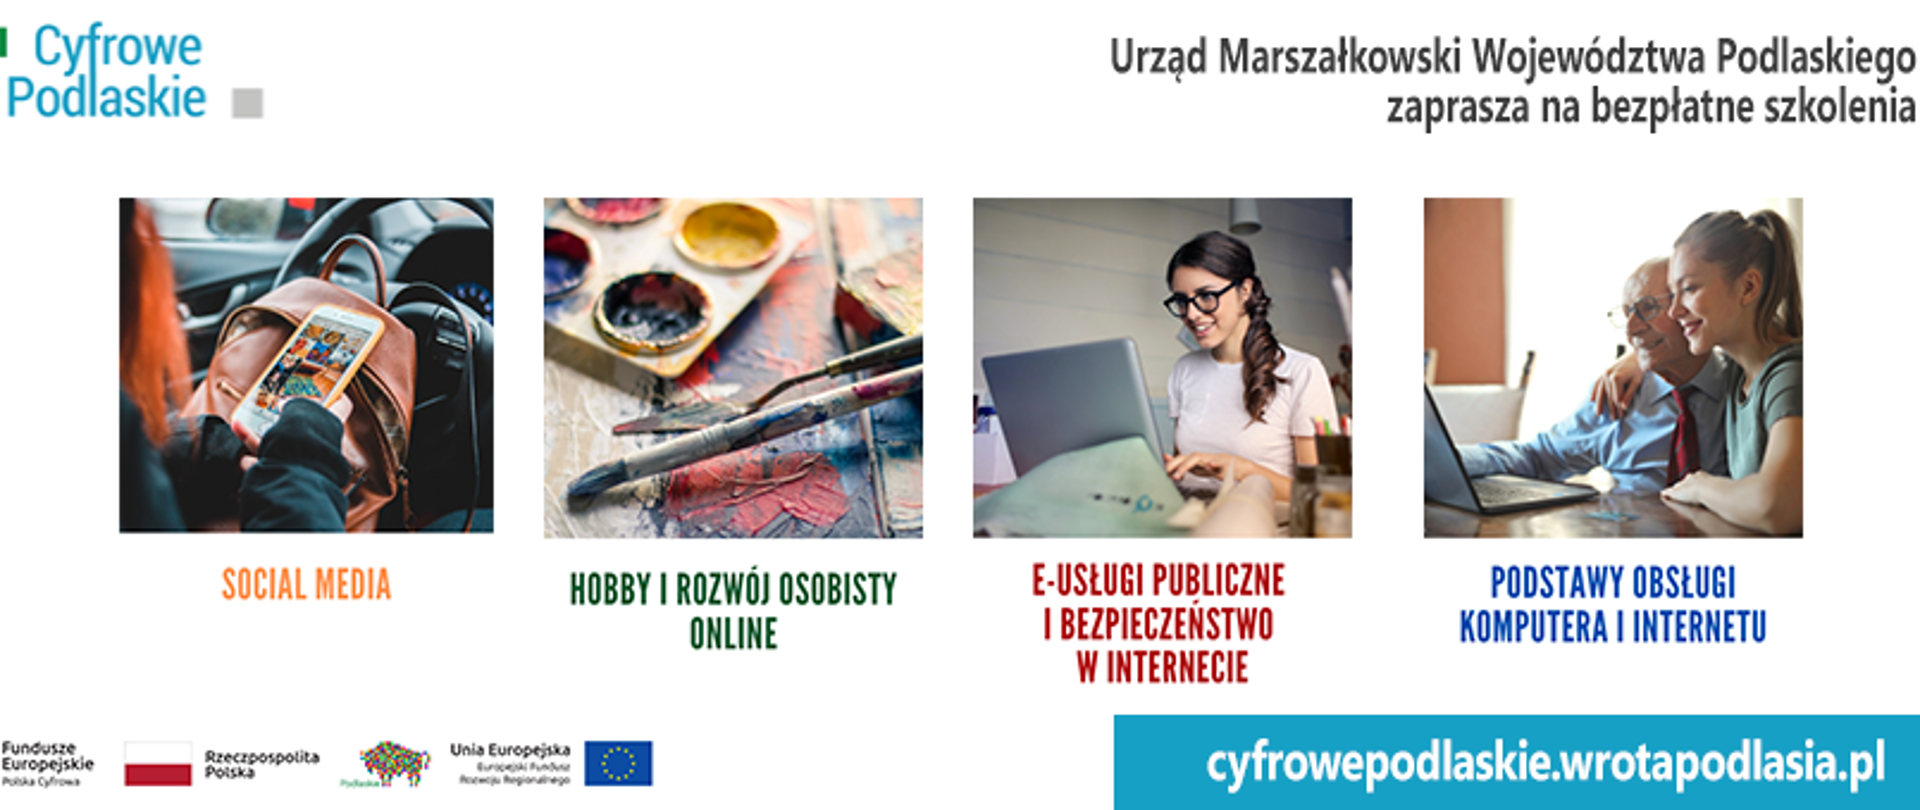 Plakat projektu Cyfrowe Podlaskie - Bezpłatne szkolenia dla mieszkańców województwa podlaskiego